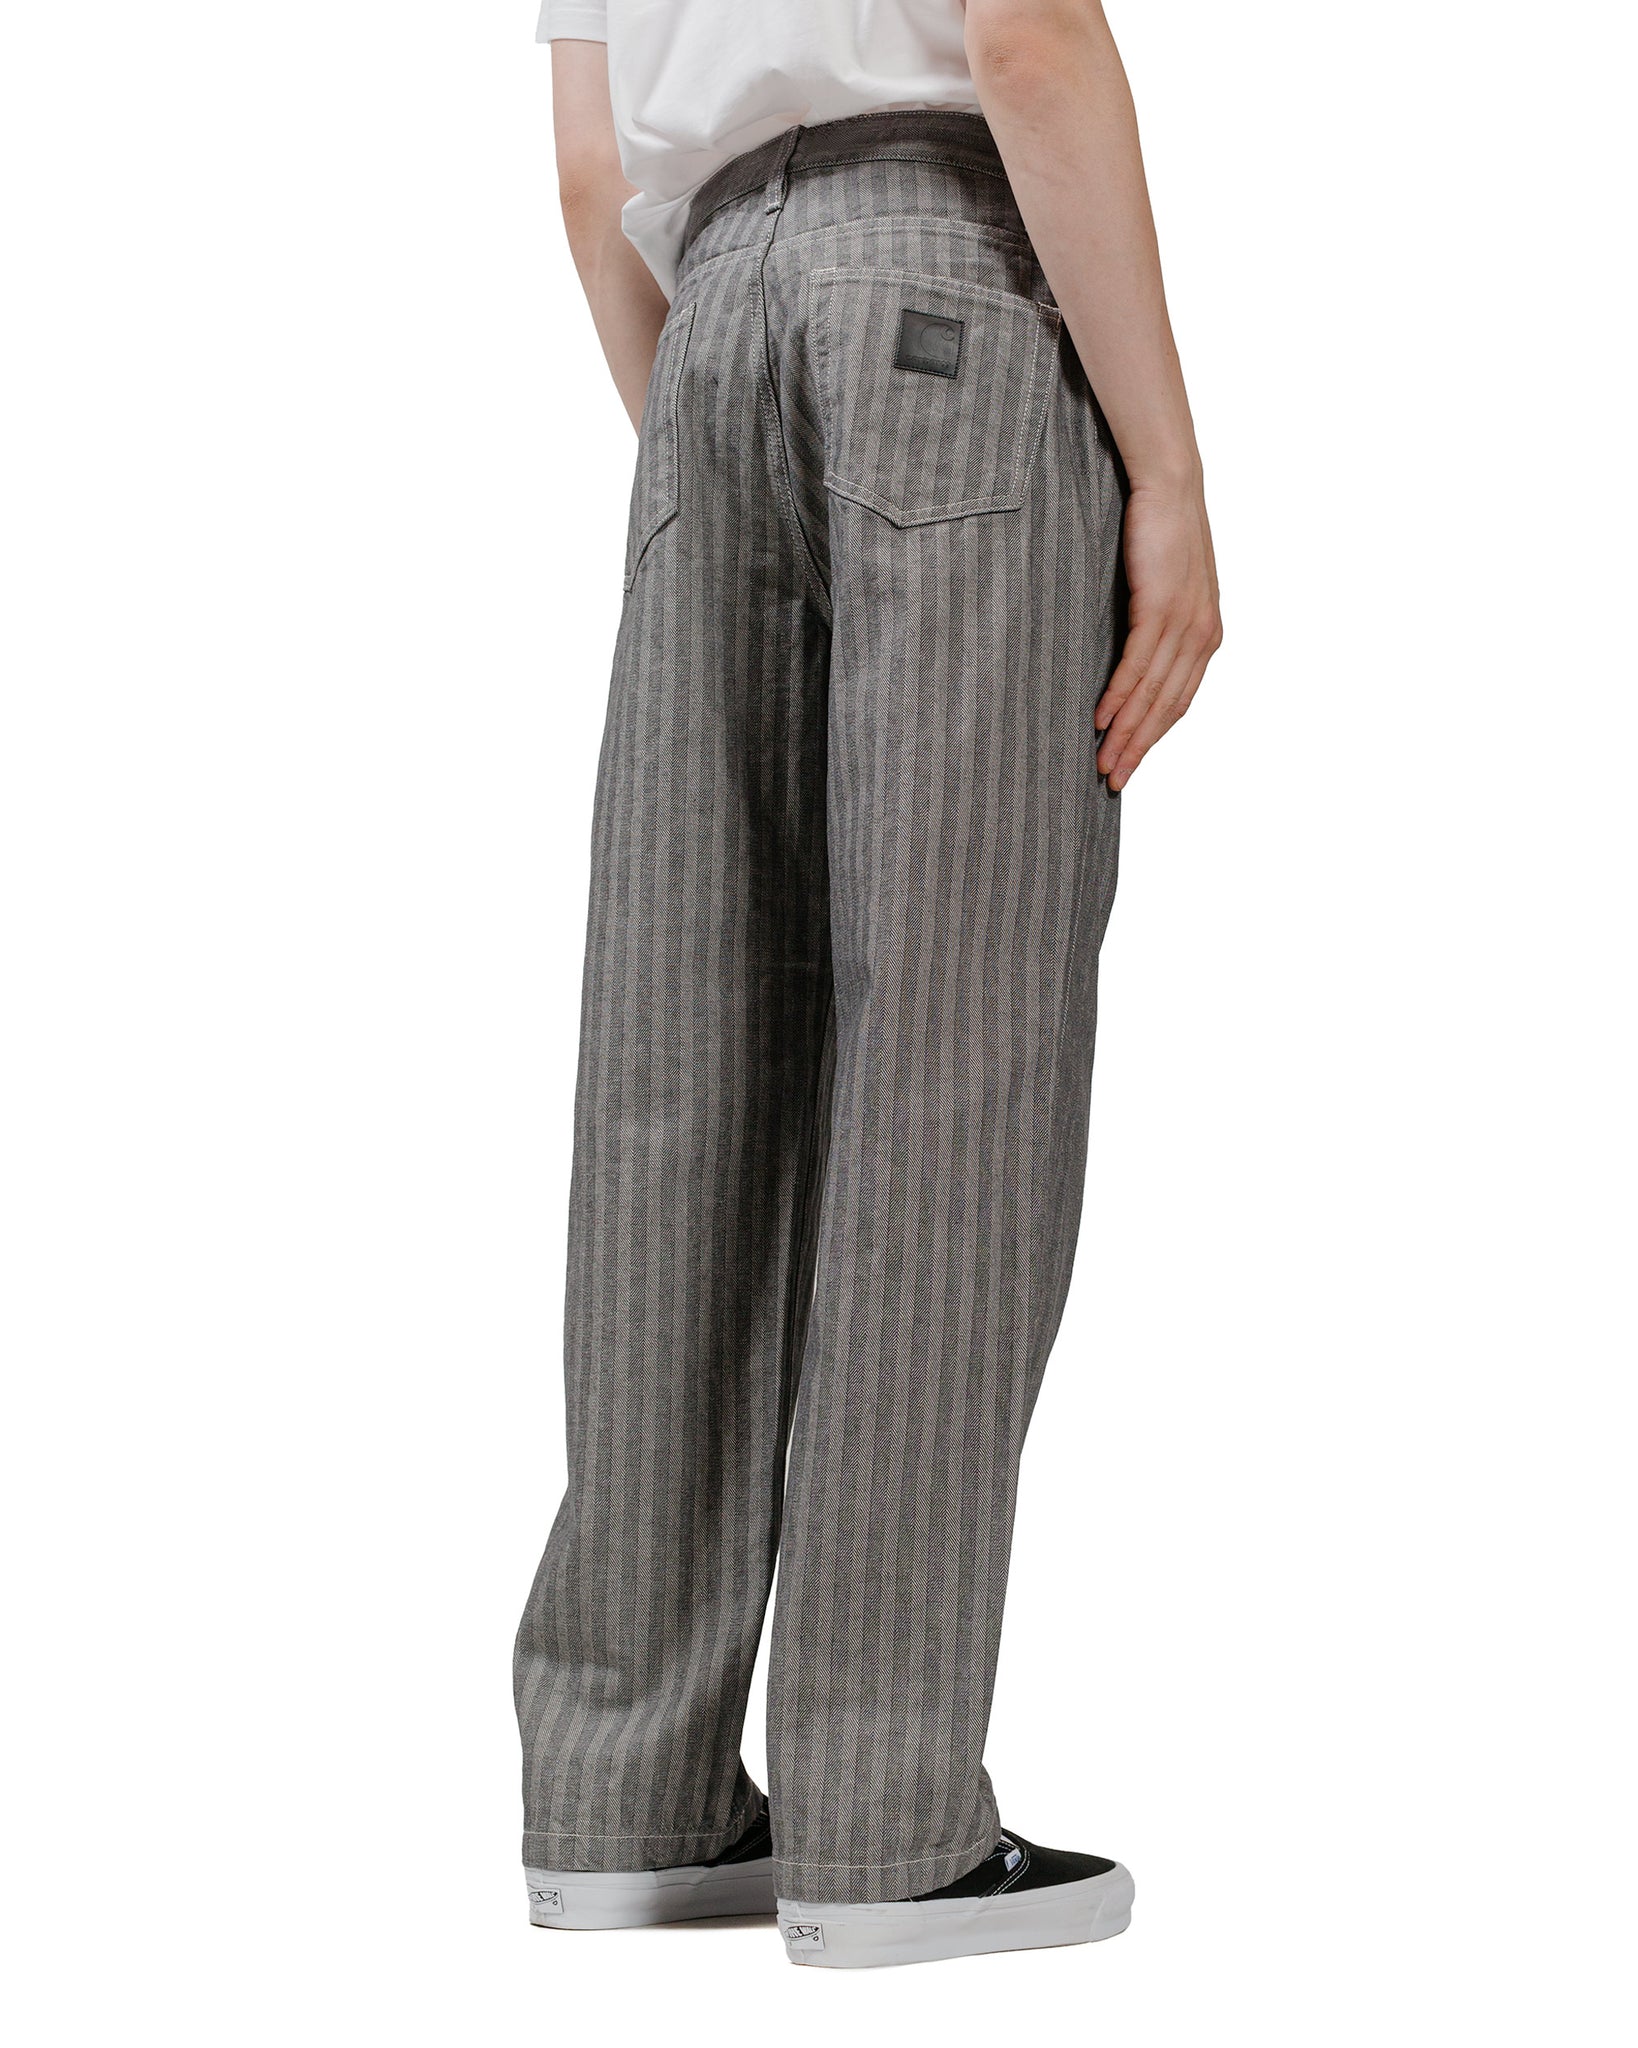 Carhartt W.I.P. Menard Pant Grey model back